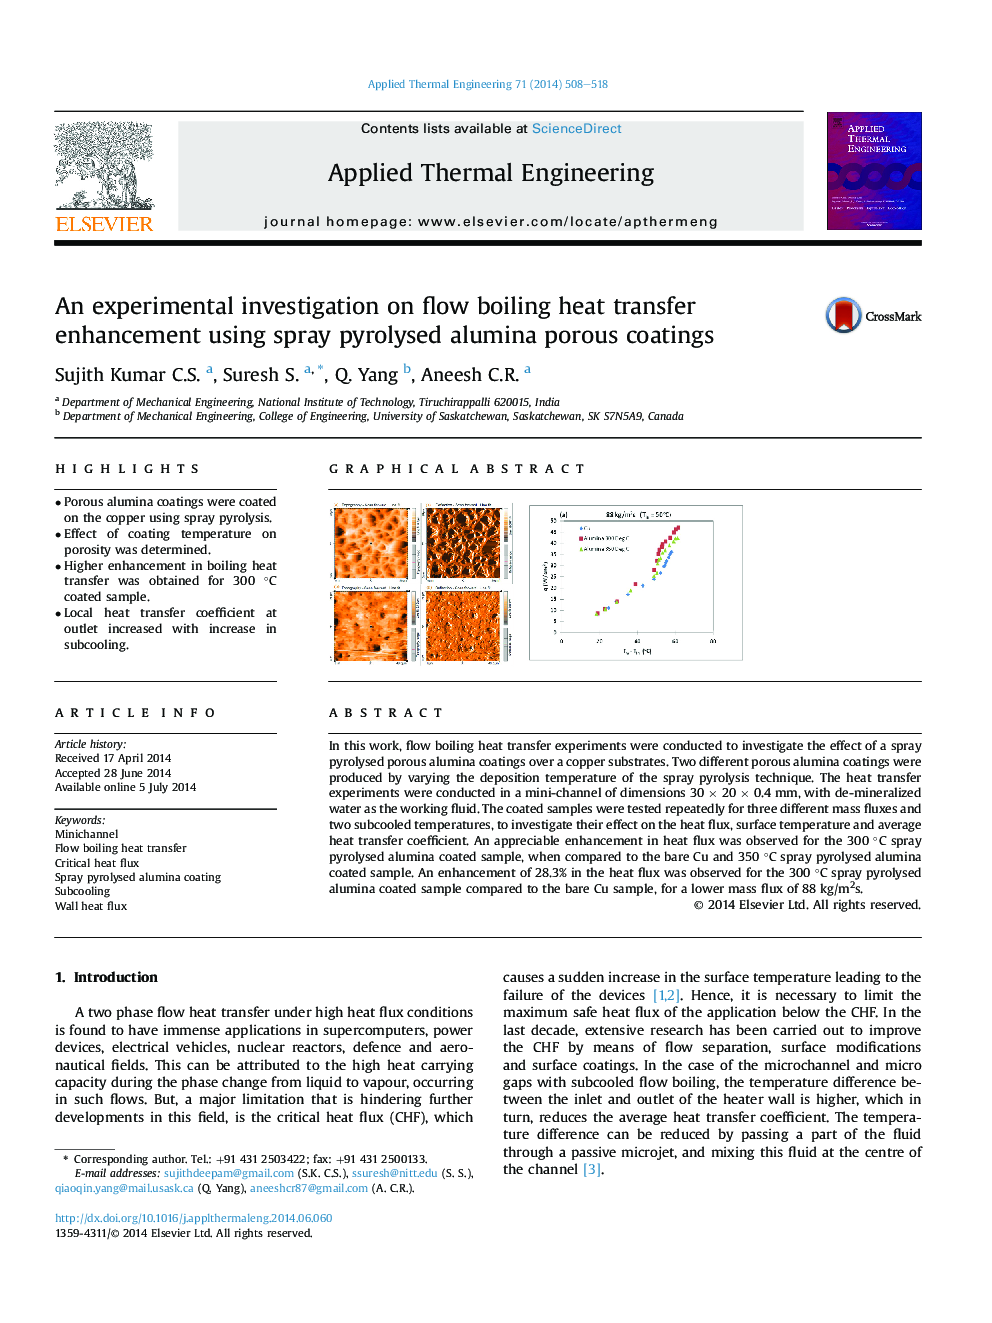 یک تحقیق تجربی در مورد افزایش جریان گرمایش جریان جوش با استفاده از پوشش های متخلخل آلومینایی اسپری پریوئیدی 